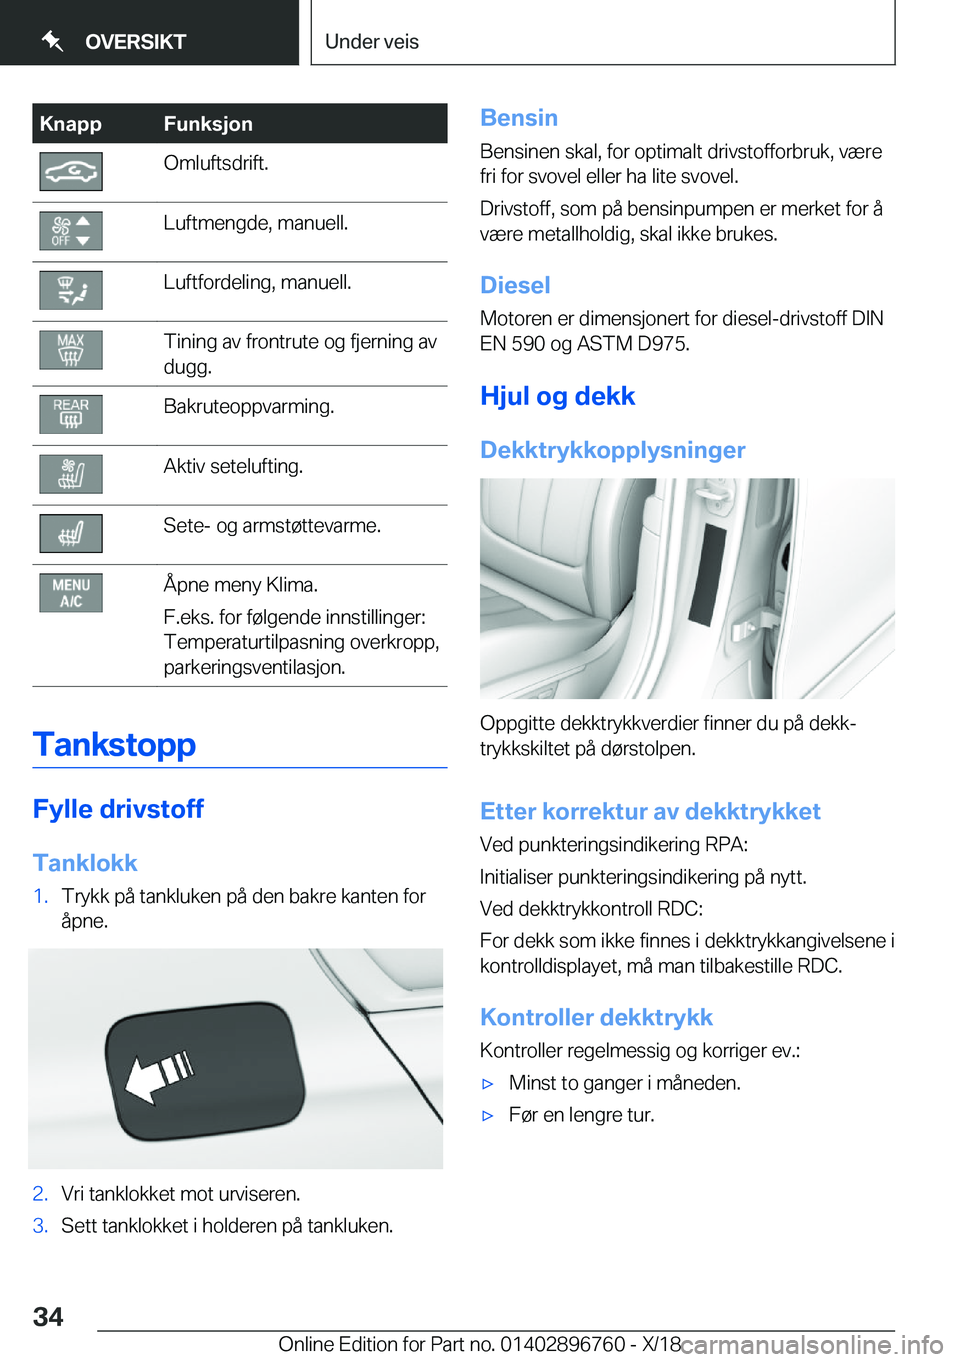 BMW X5 2019  InstruksjonsbØker (in Norwegian) �K�n�a�p�p�F�u�n�k�s�j�o�n�O�m�l�u�f�t�s�d�r�i�f�t�.�L�u�f�t�m�e�n�g�d�e�,��m�a�n�u�e�l�l�.�L�u�f�t�f�o�r�d�e�l�i�n�g�,��m�a�n�u�e�l�l�.�T�i�n�i�n�g��a�v��f�r�o�n�t�r�u�t�e��o�g��f�j�e�r�n�i�n�g